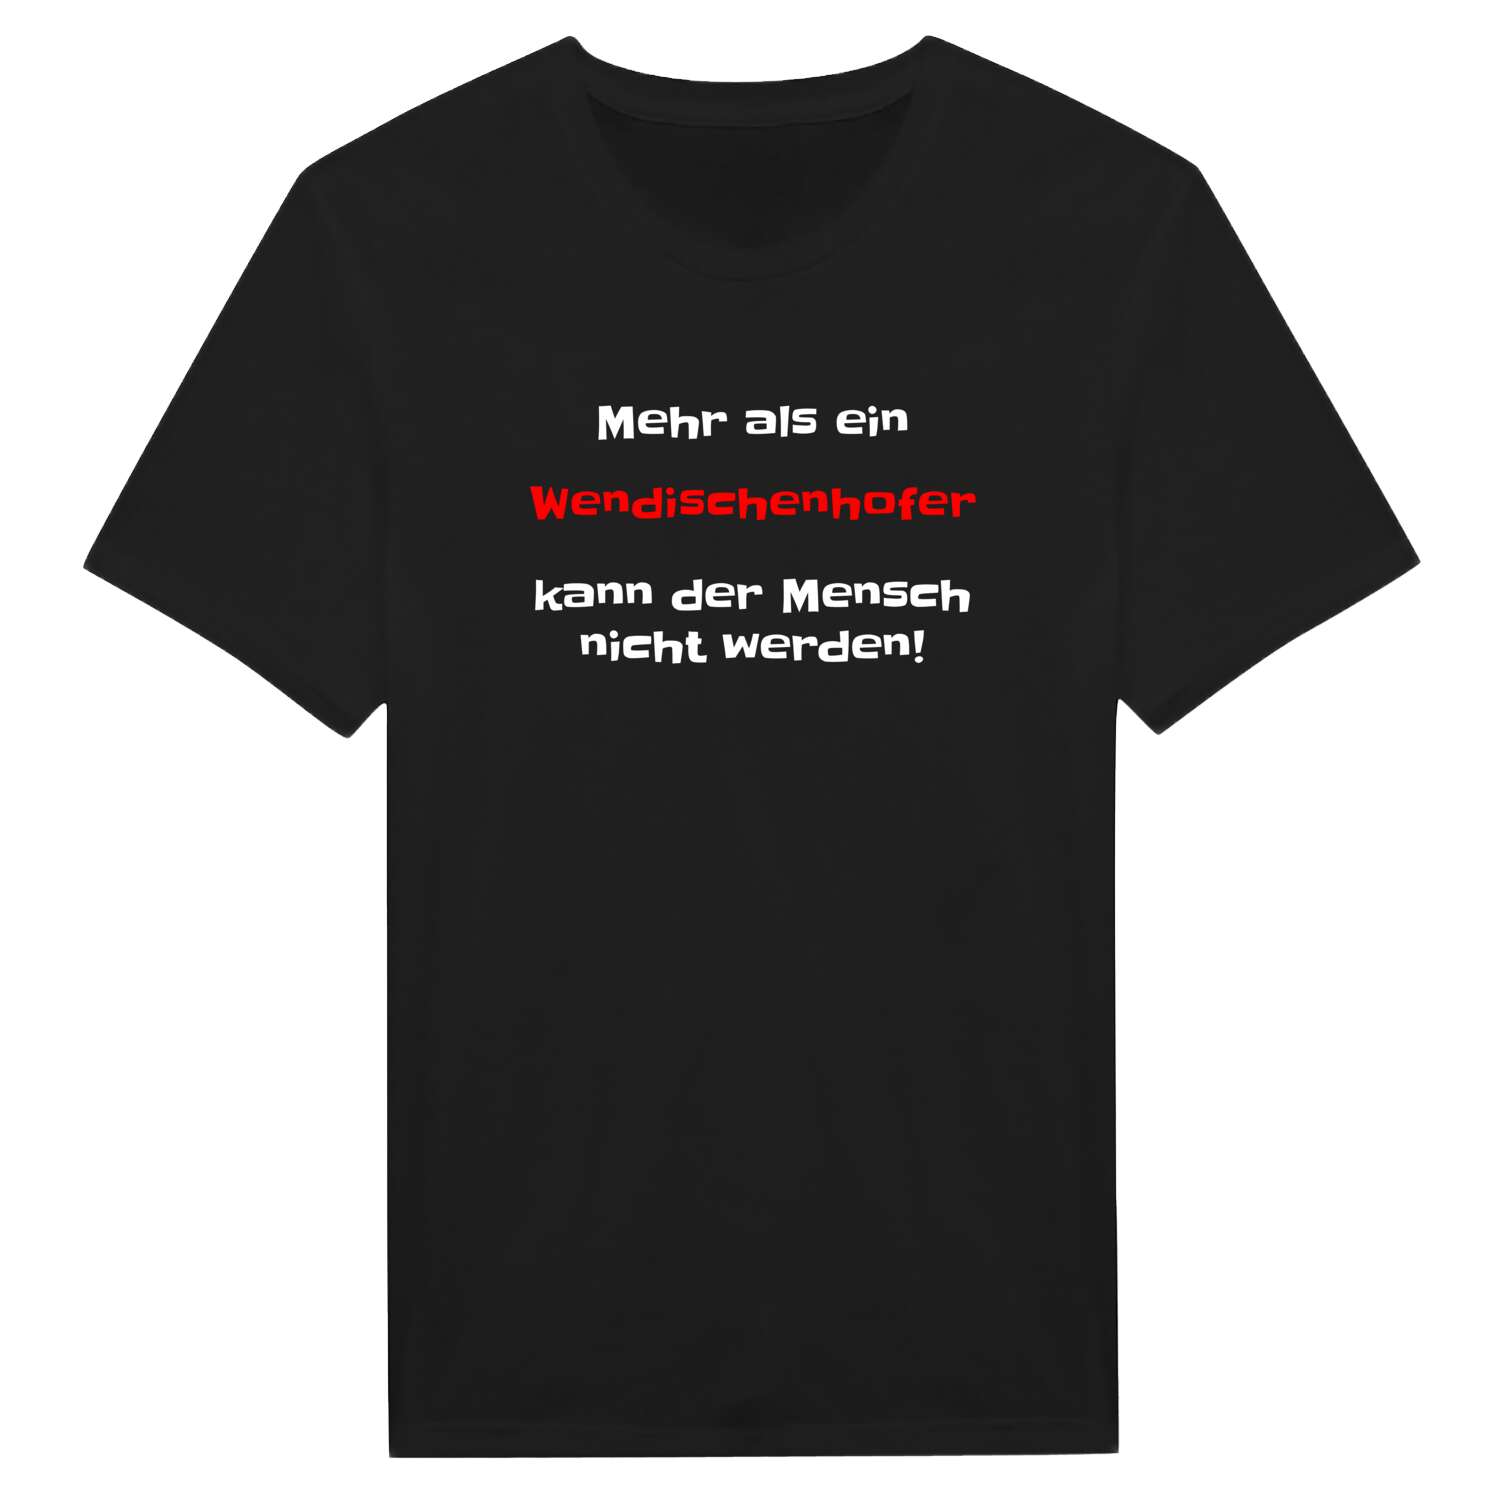 Wendischenhof T-Shirt »Mehr als ein«